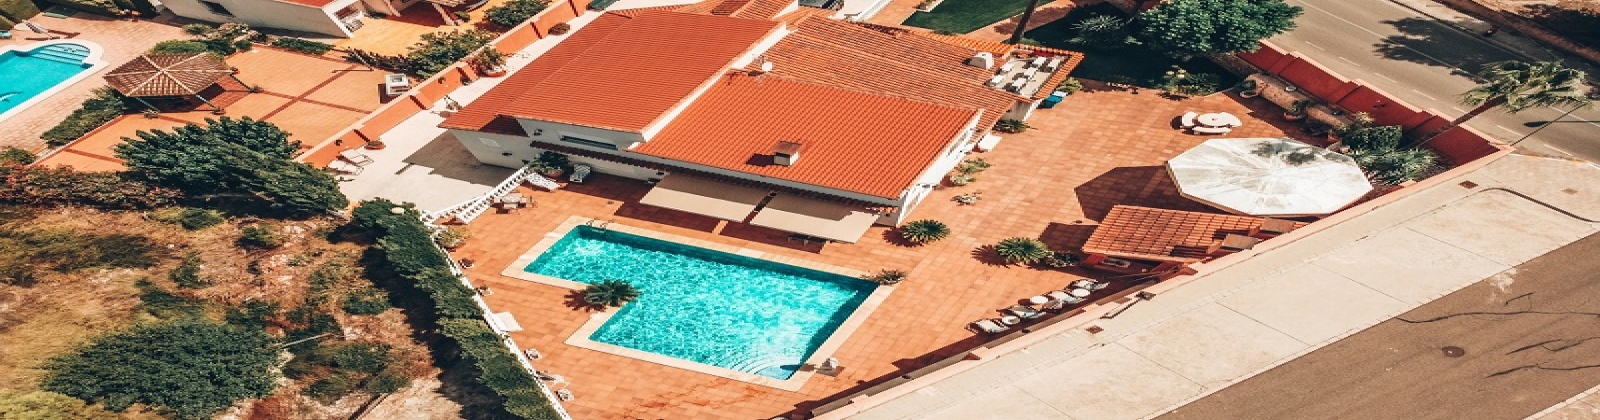 Vivienda Lujo en venta en Torre Guil 8 dormitorios piscina privada